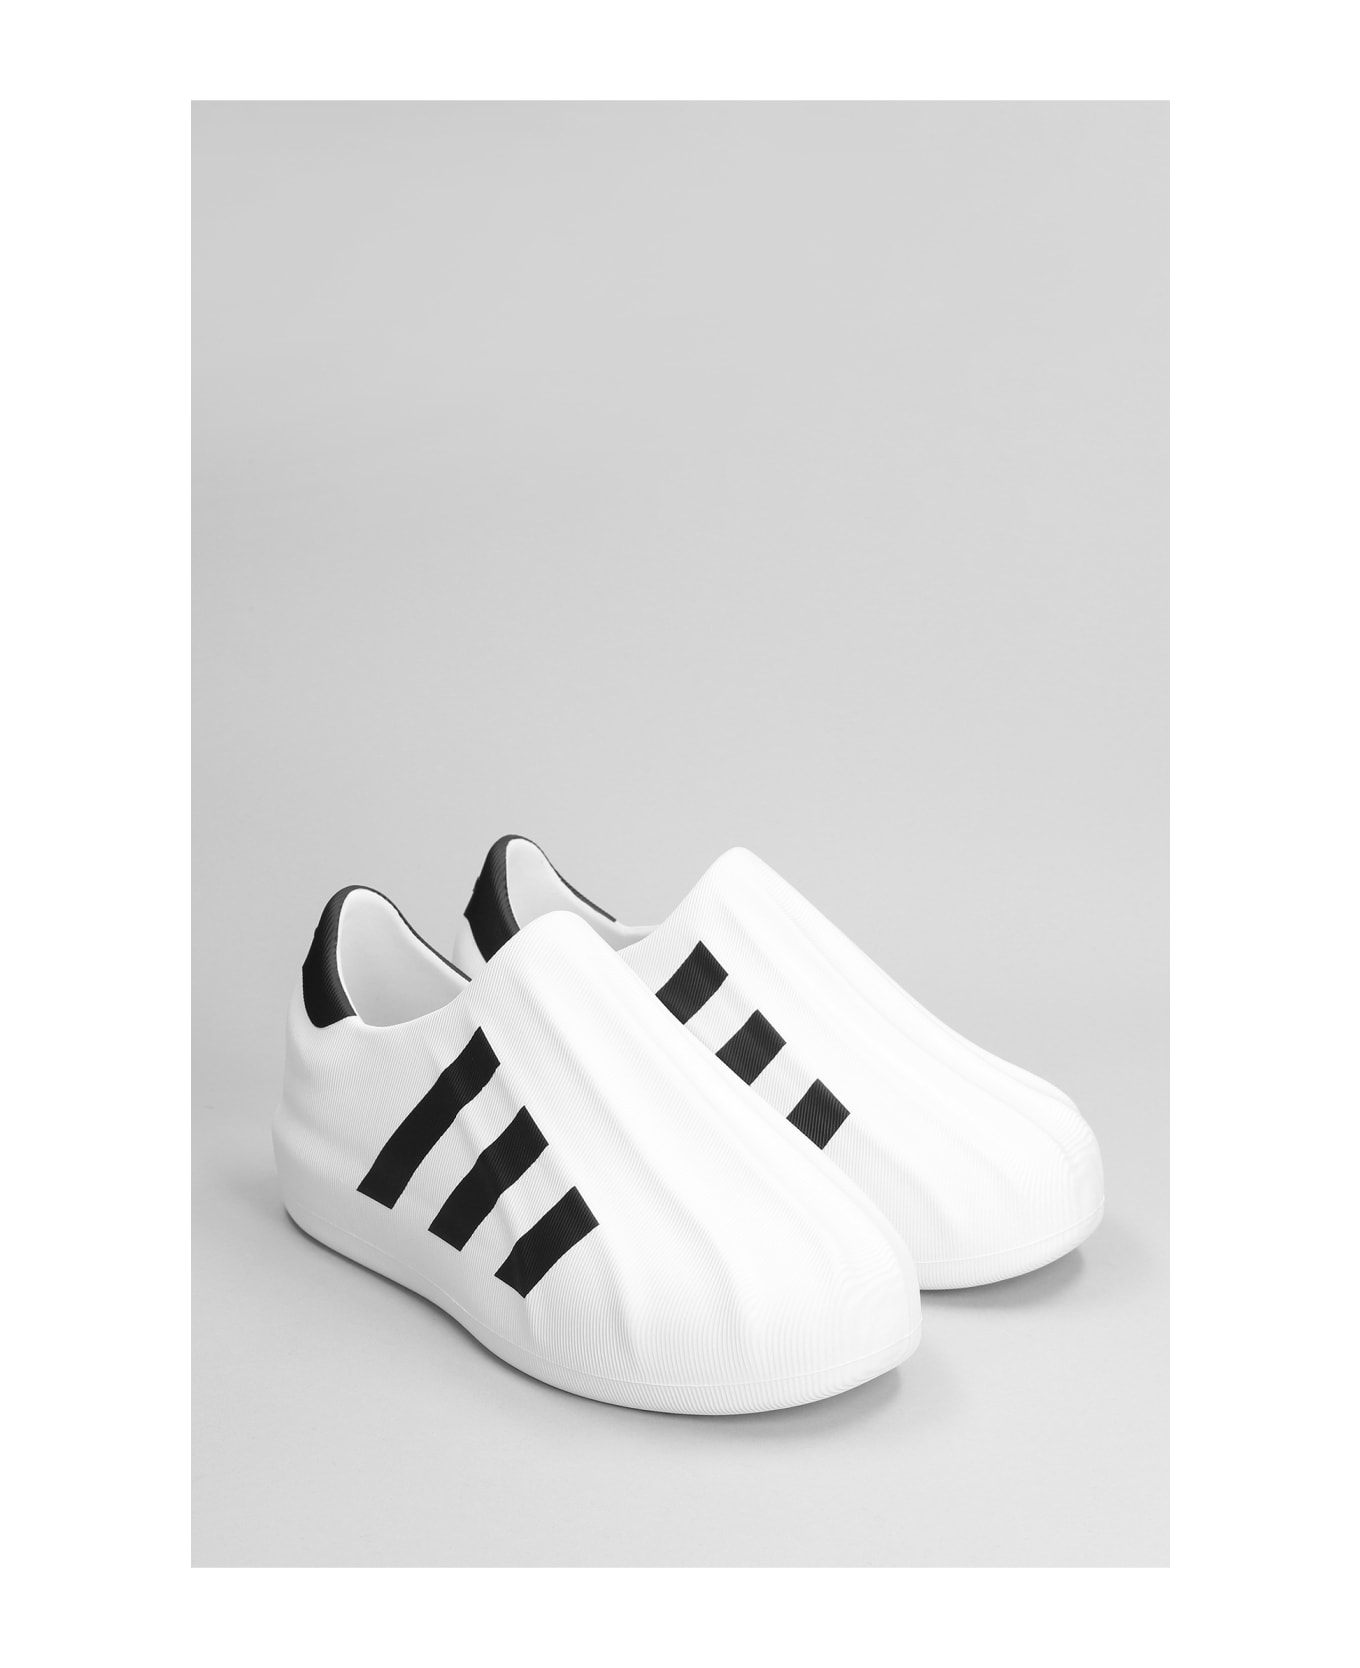 Adidas Originals Adifom Superstar Sneakers In White Pvc - Cwhite Cblack Cblack